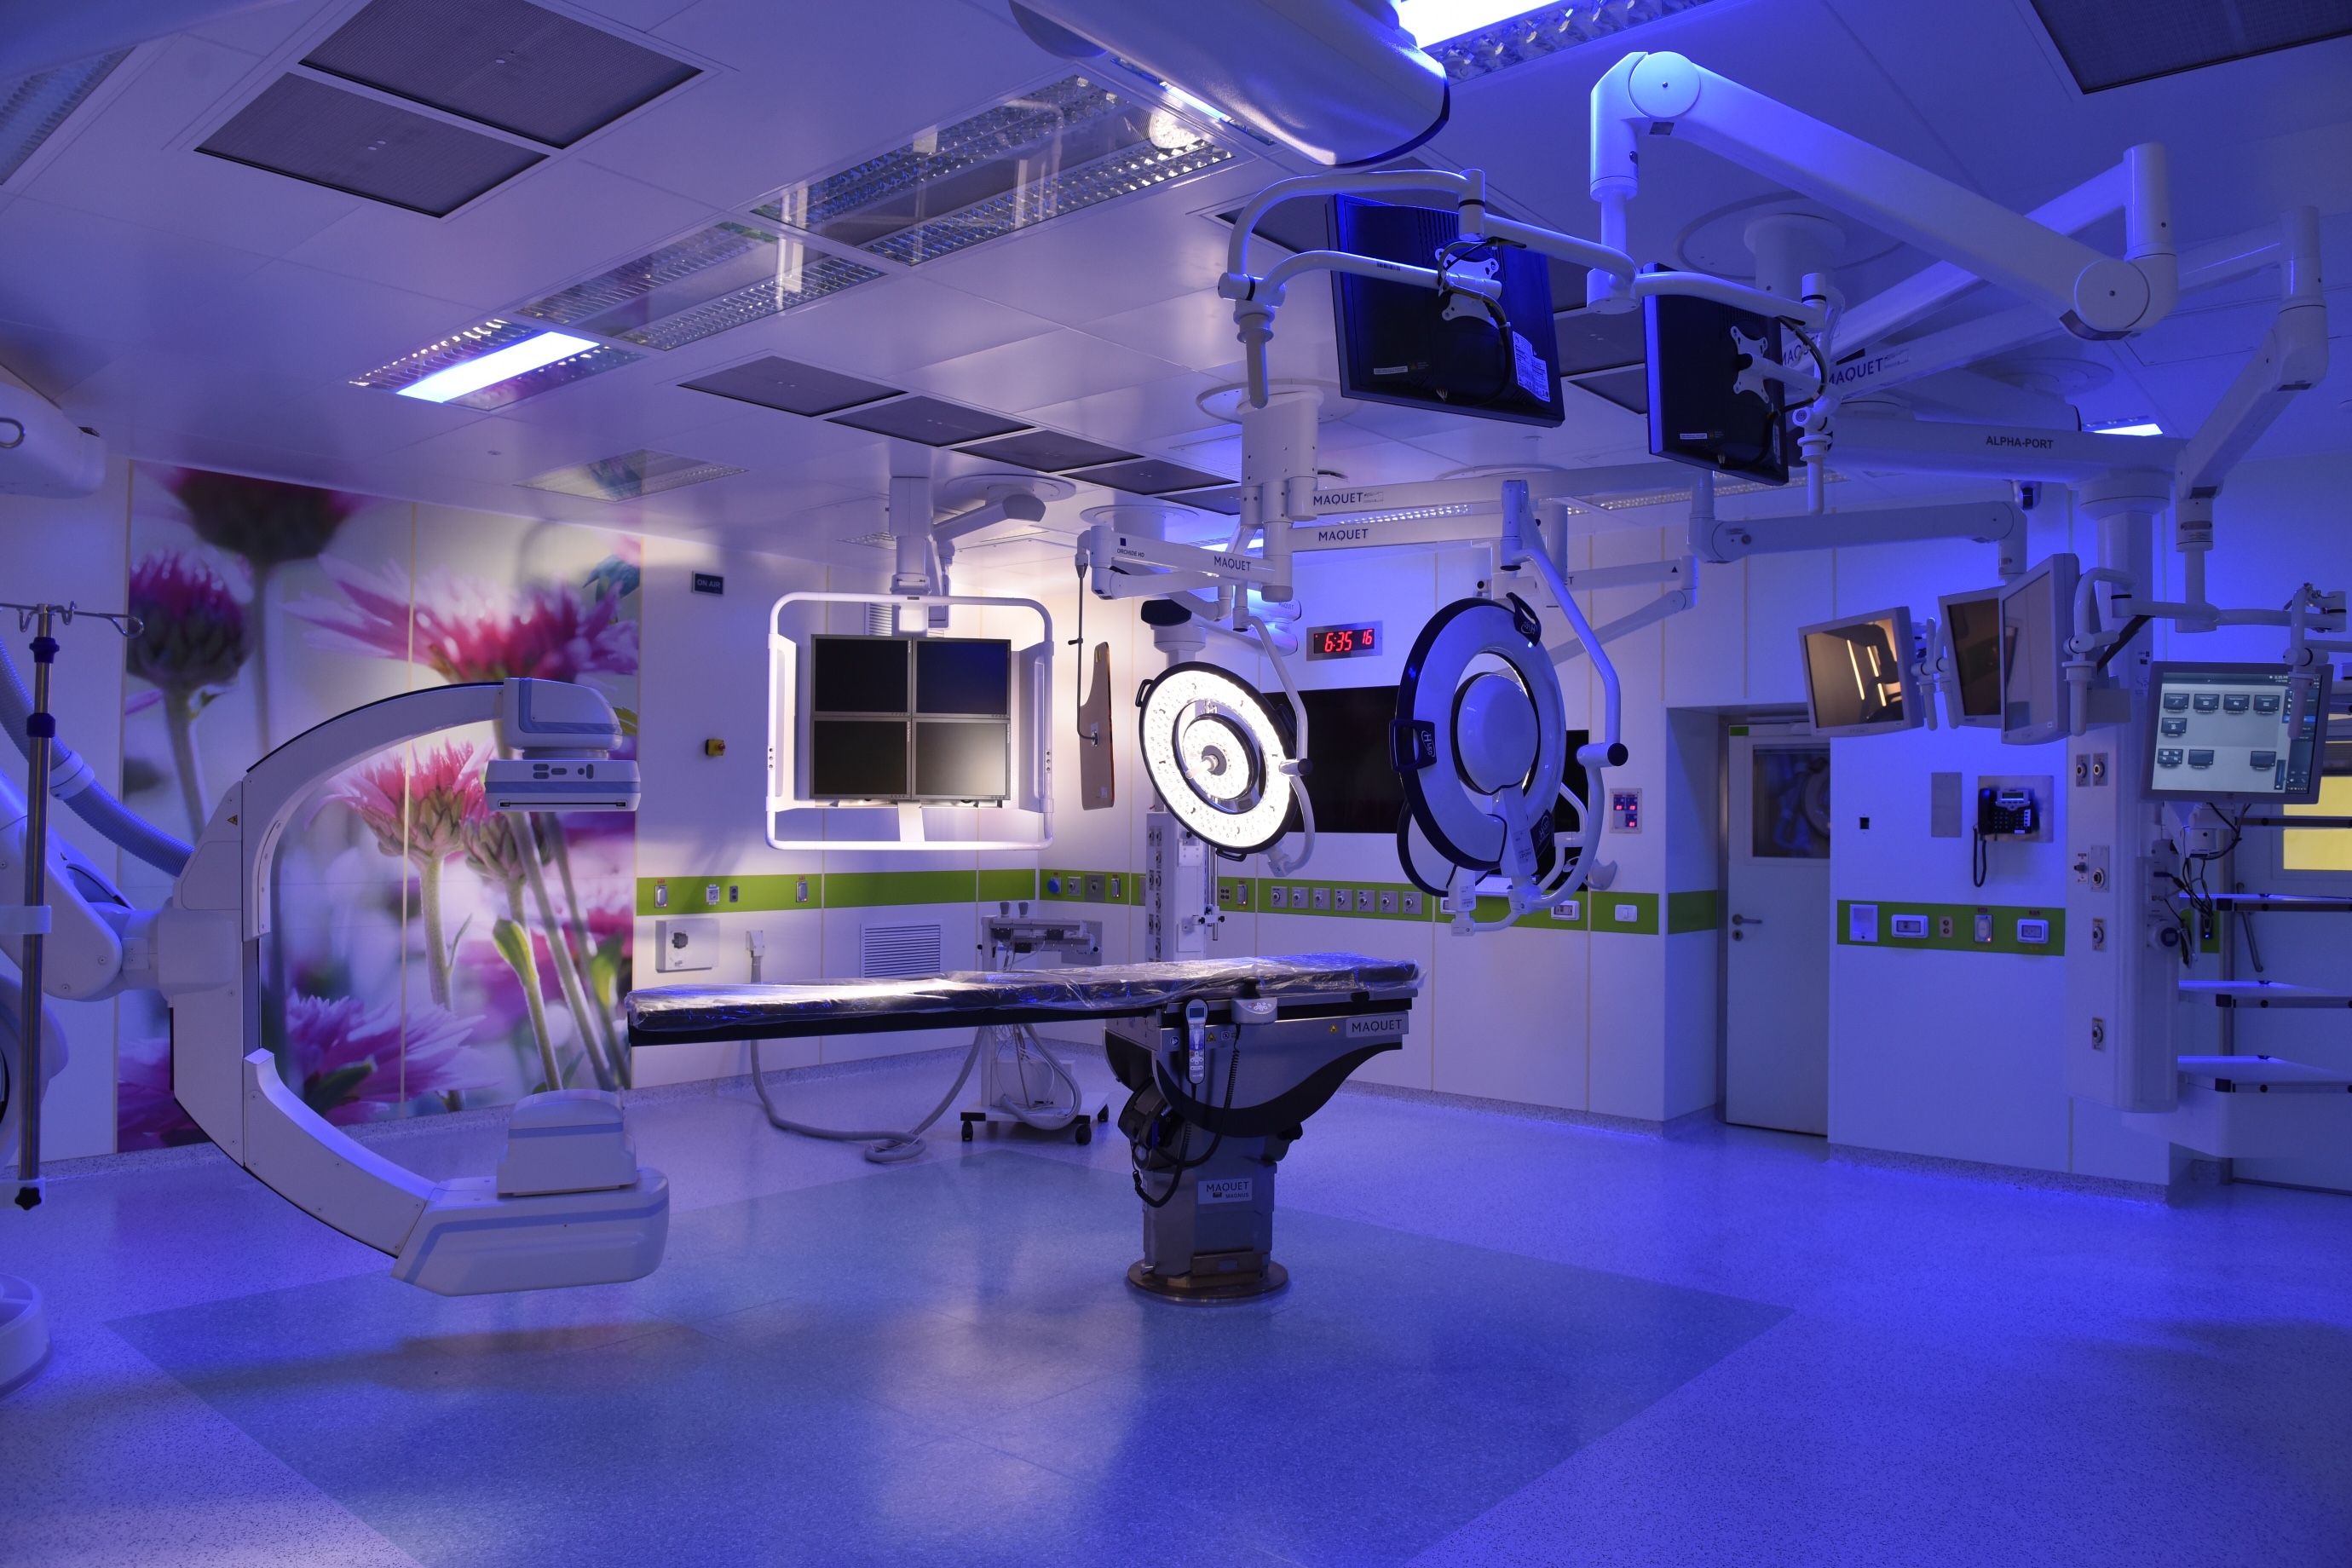 אחד מחדרי הניתוח החדשים (בית חולים הדסה)